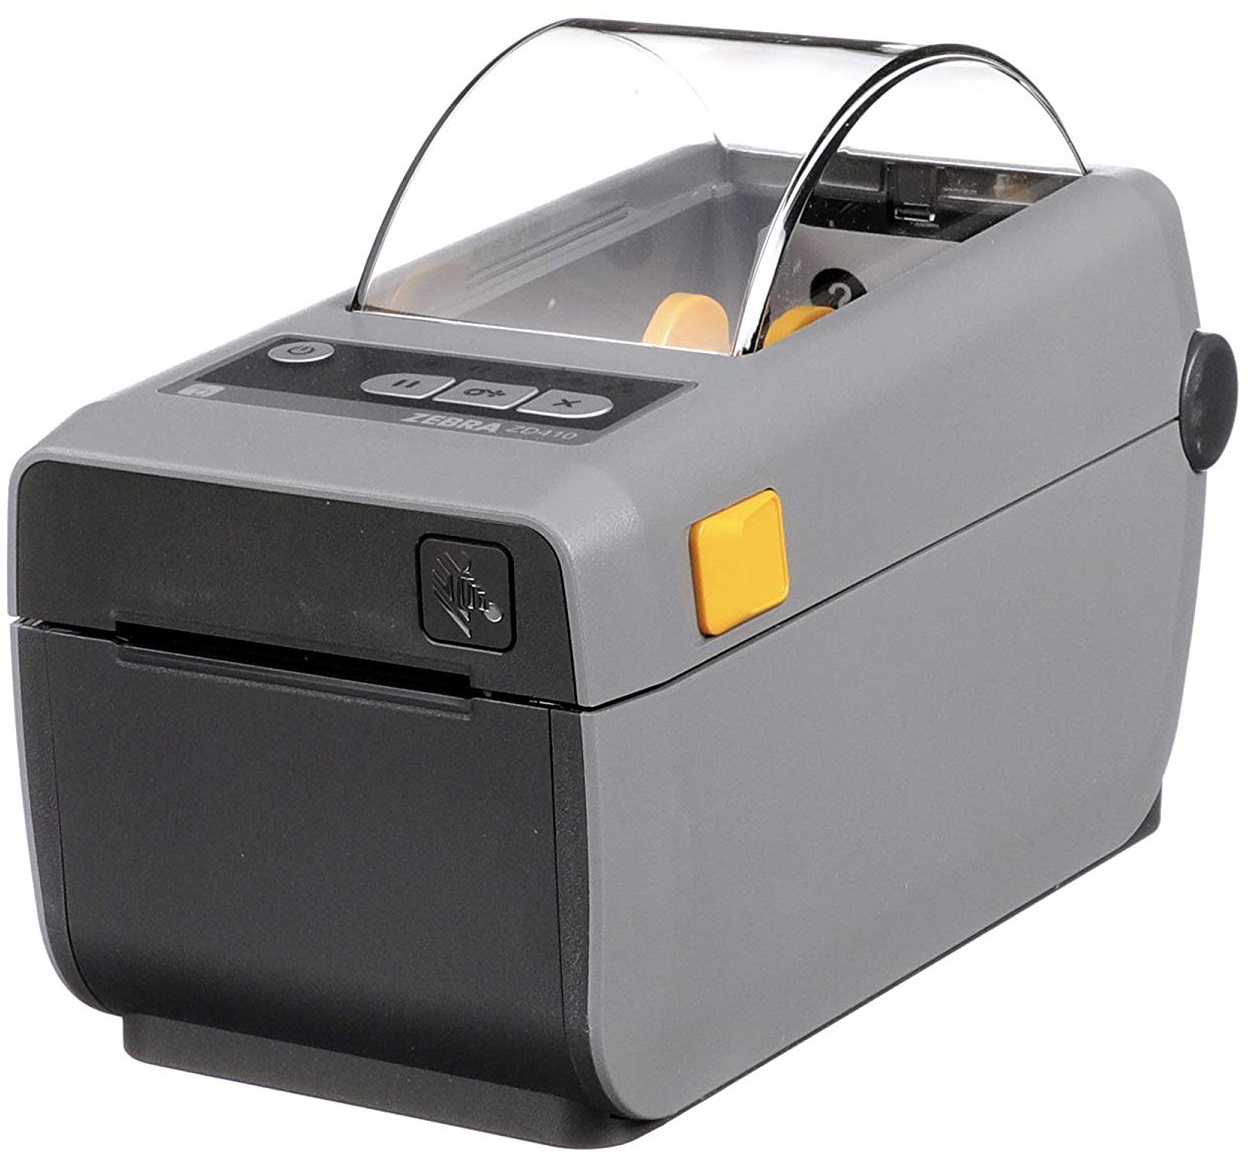  Impresora de Etiquetas - Zebra ZD410 ZD41022-D01M00EZ | La impresora más pequeña de su clase. Diseñada para grandes negocios con tecnología de hoy y del futuro. Elija entre USB, auto-sensing, 10/100 Ethernet, o las últimas opciones  de Wi-Fi y Bluetooth